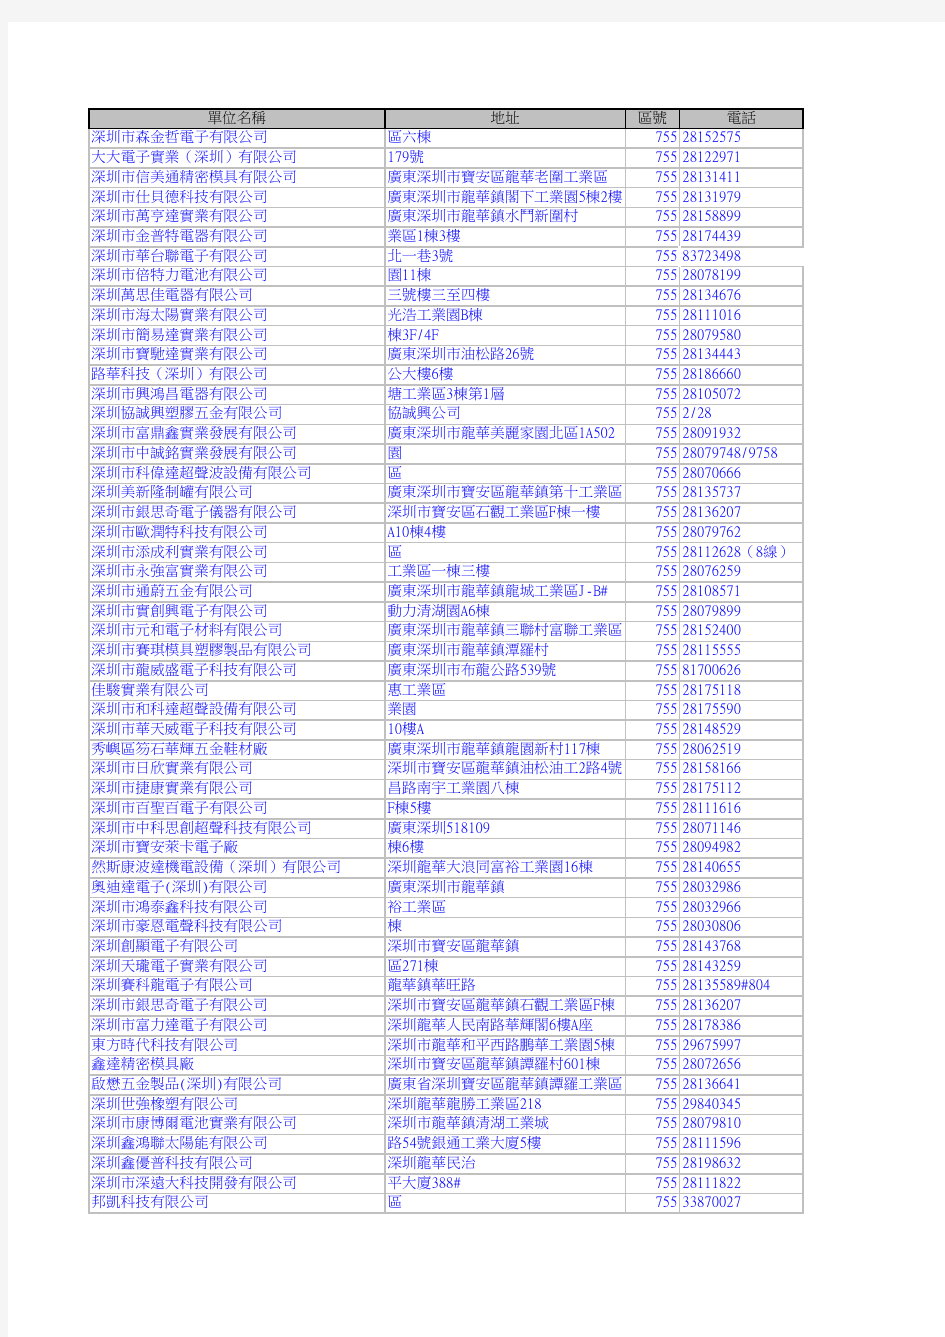 深圳龙华大型企业名单2011